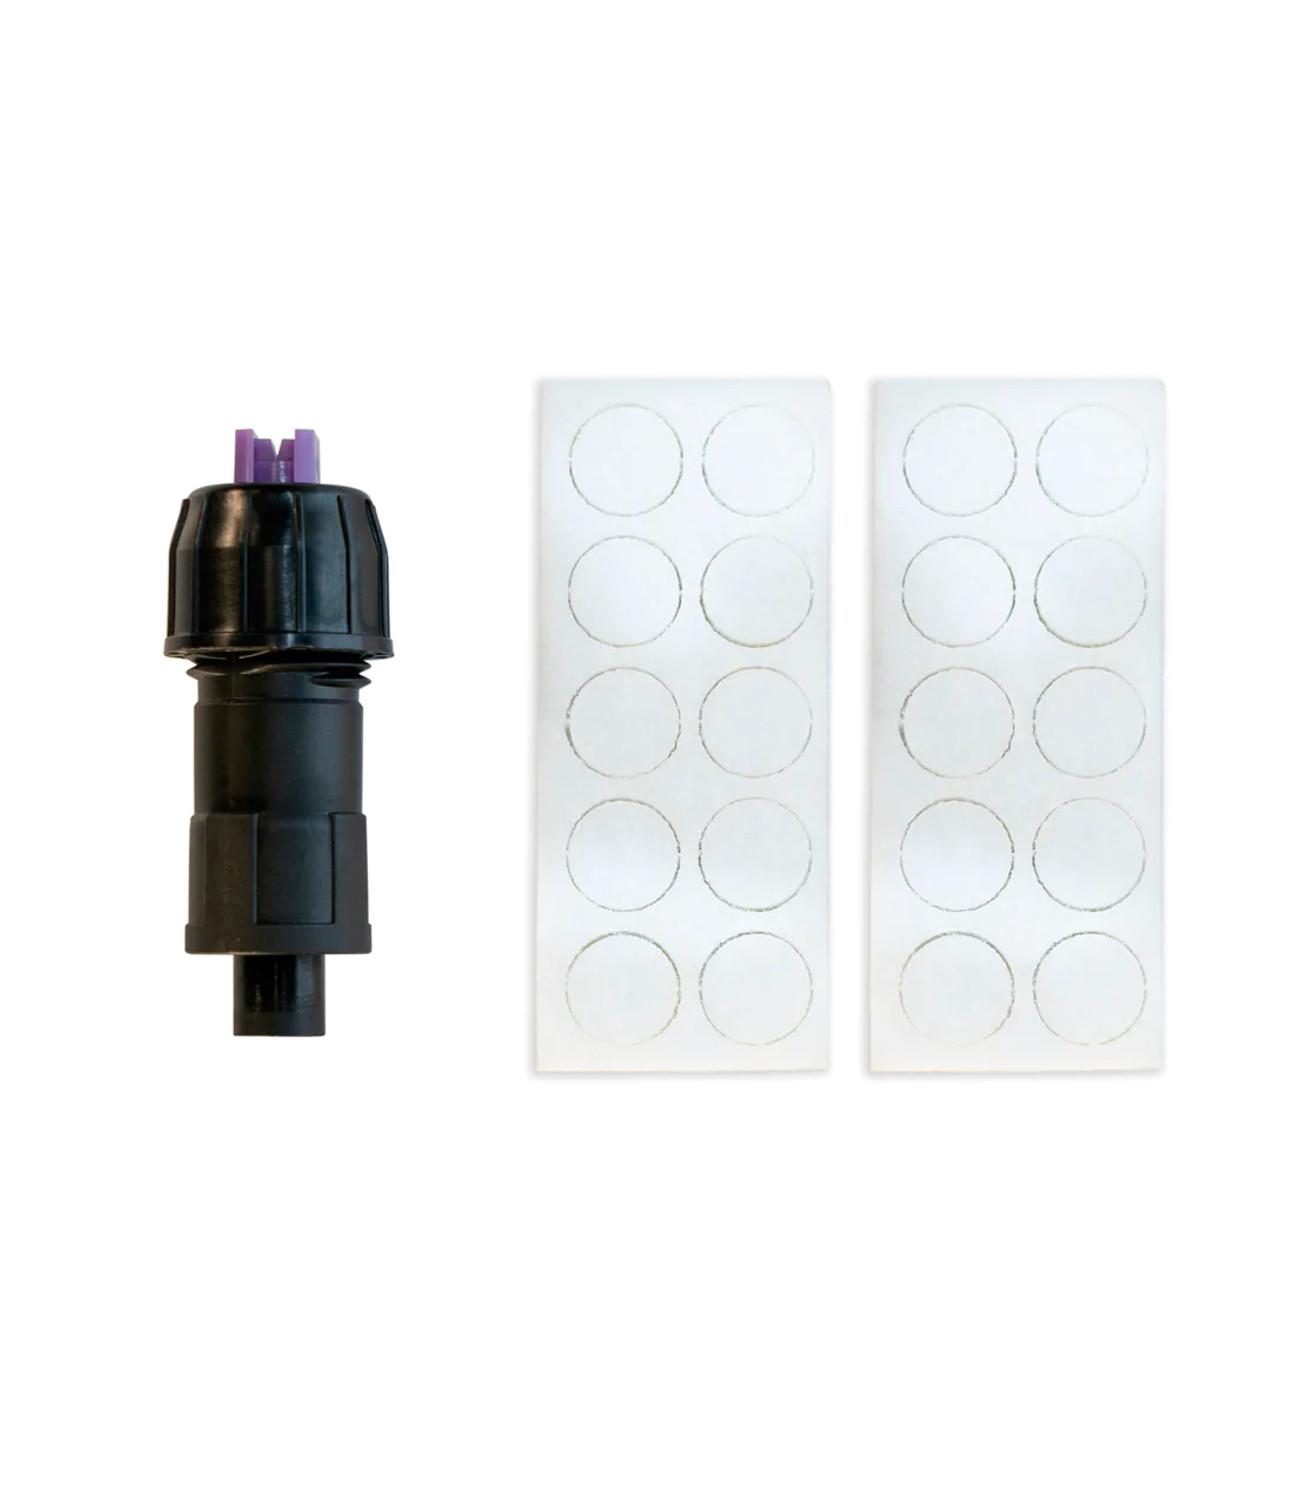 IK Foam Pro 2 Replacement Nozzle Kit